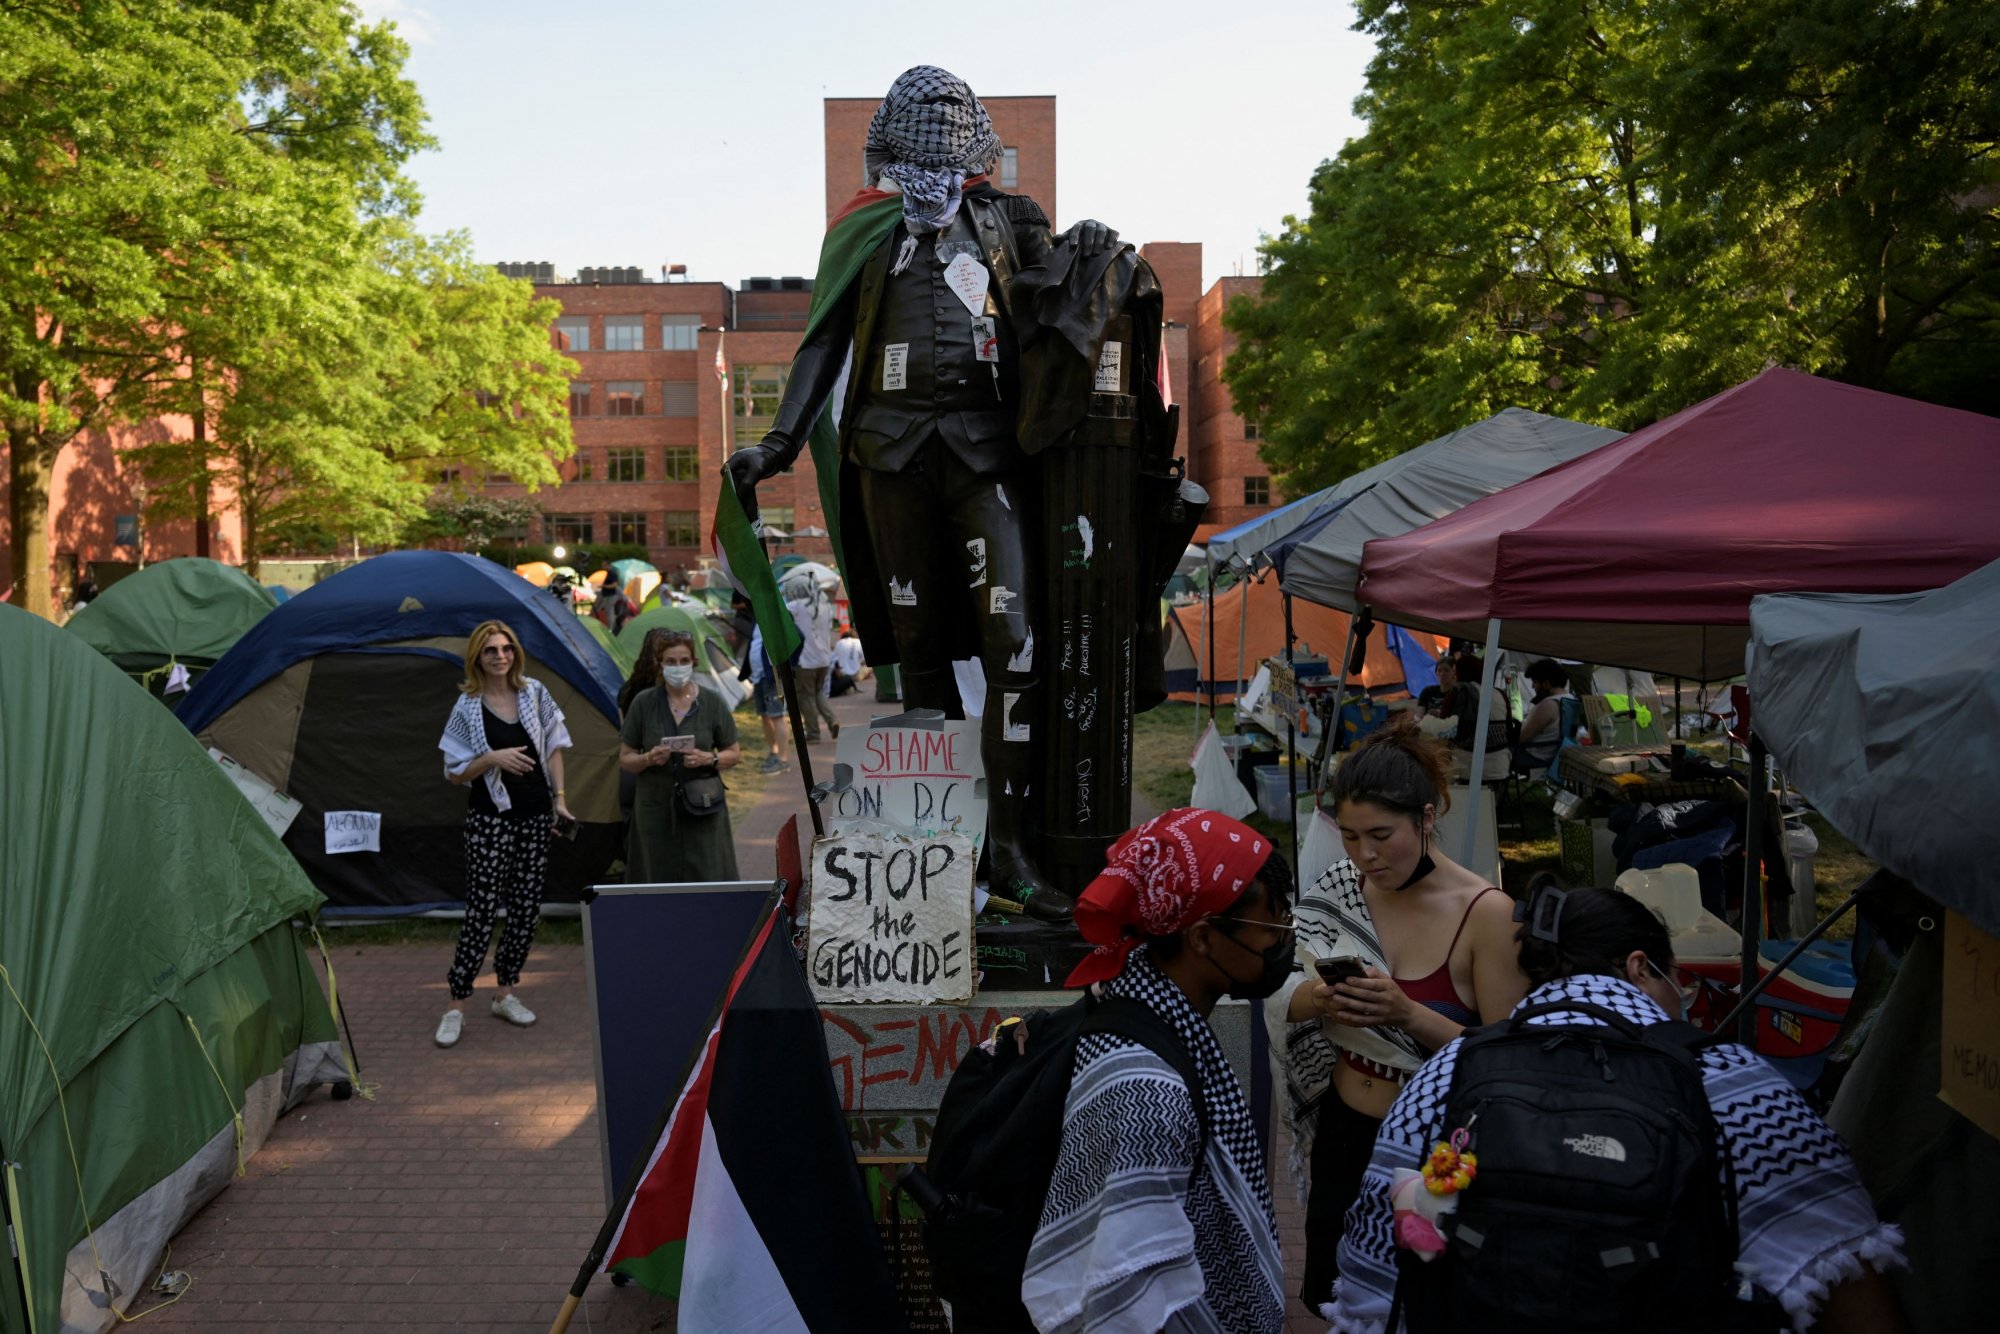 Φοιτητικές διαδηλώσεις στις ΗΠΑ: Ειρηνικό το 97% - Η αστυνομική καταστολή αύξησε τη βία